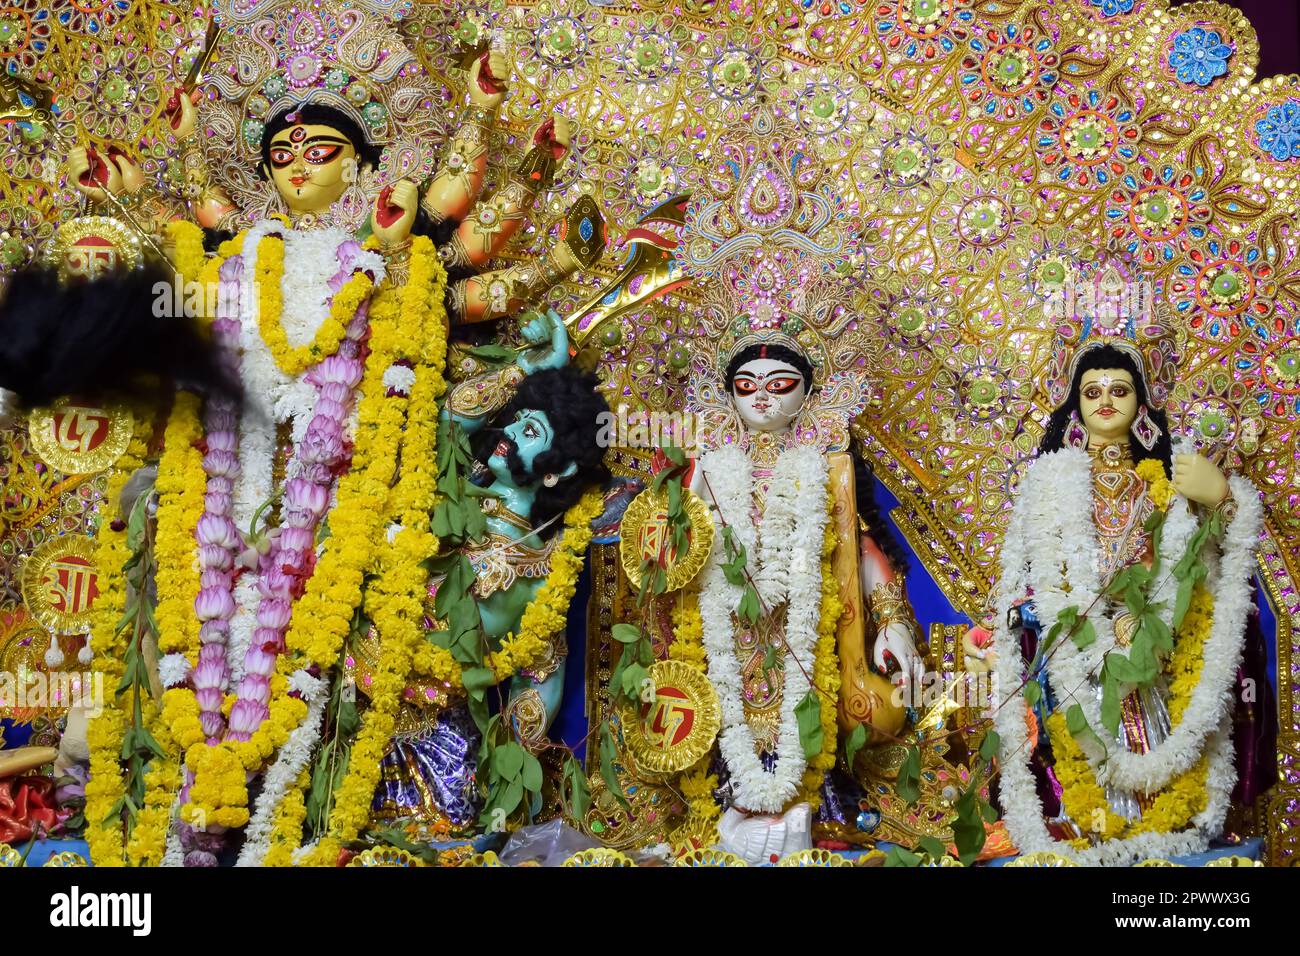 La déesse Durga avec un regard traditionnel en vue rapprochée dans un sud Kolkata Durga Puja, Durga Puja Idol, Un plus grand festival hindou Navratri en Inde Banque D'Images